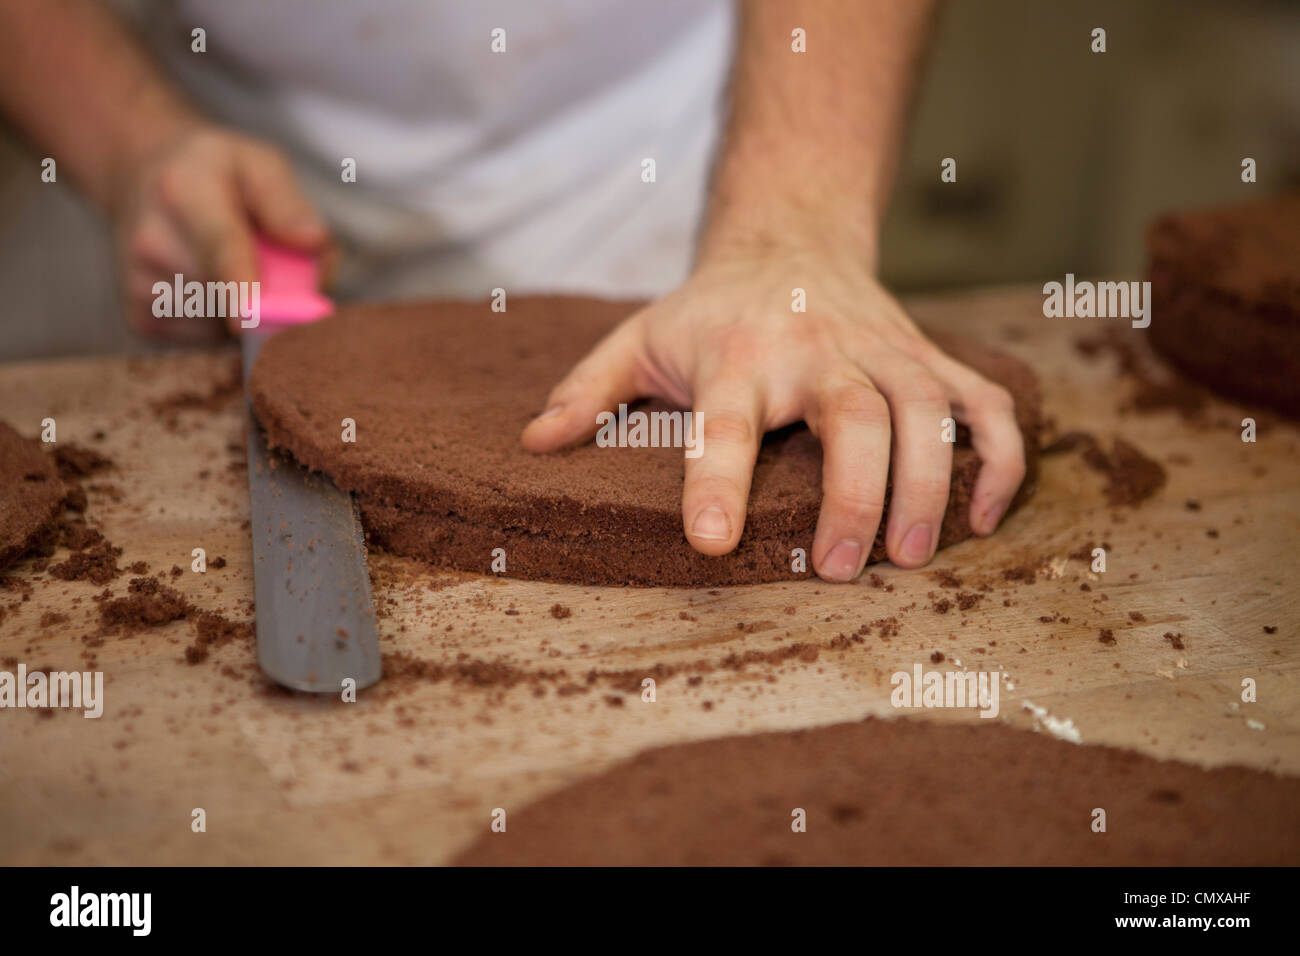 Germany, Bavaria, Munich, Baker cutting cake layers Stock Photo